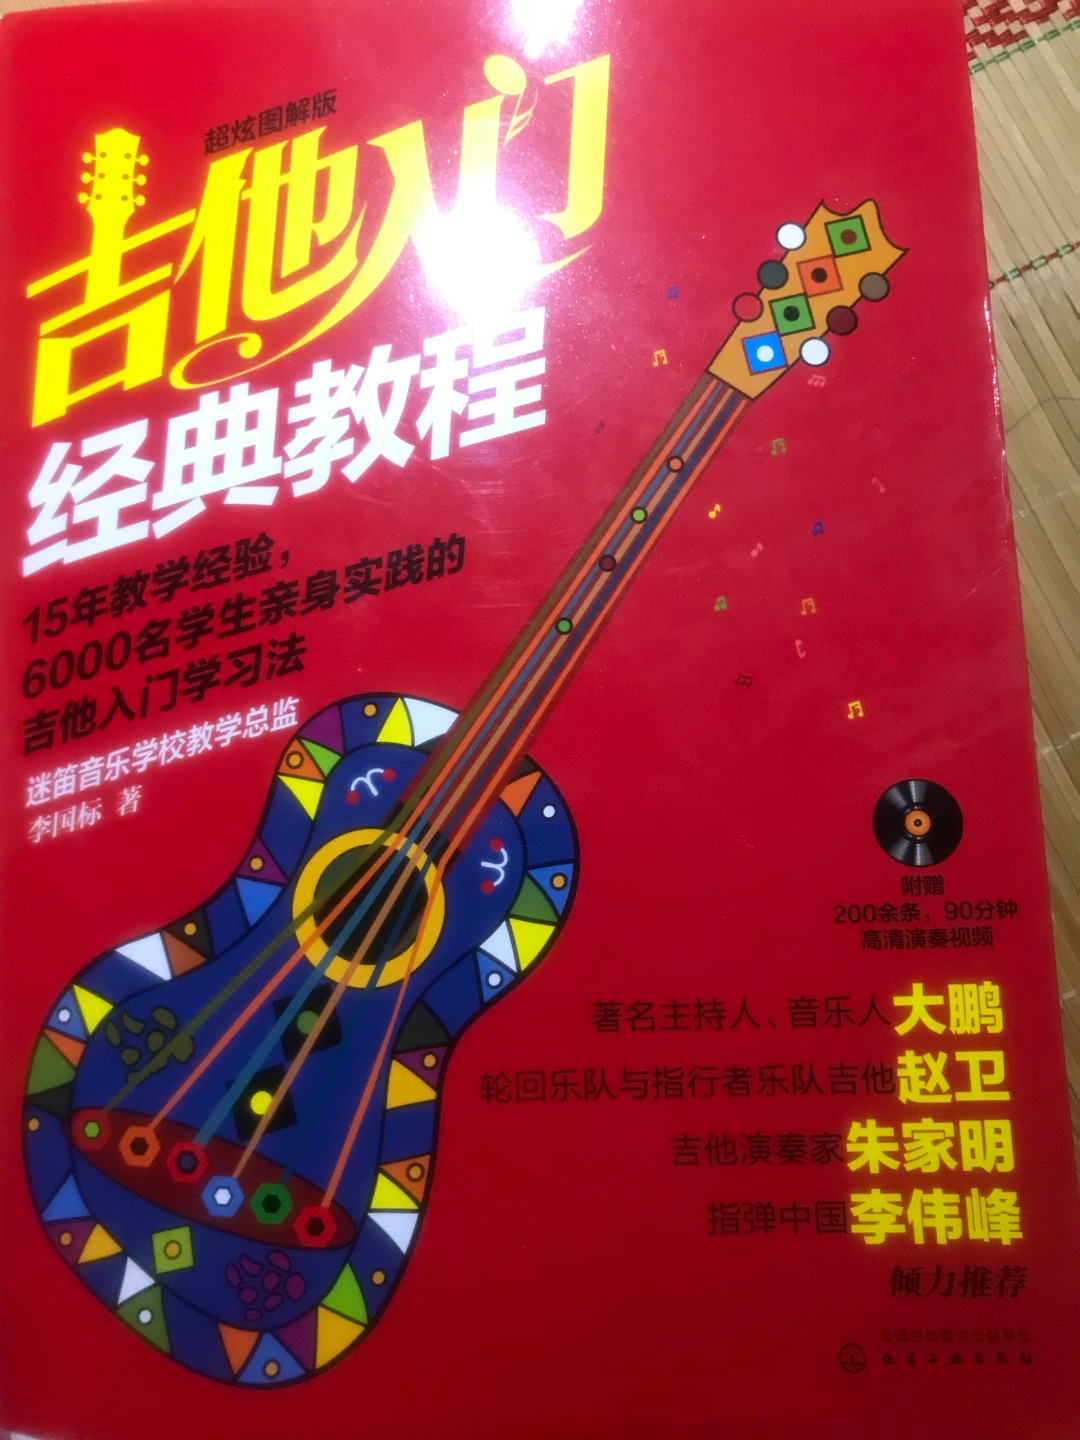 这本经典教学书对于小白来说很值得看，讲的简单易懂！本人也是个小白刚学习吉他。值得推荐！